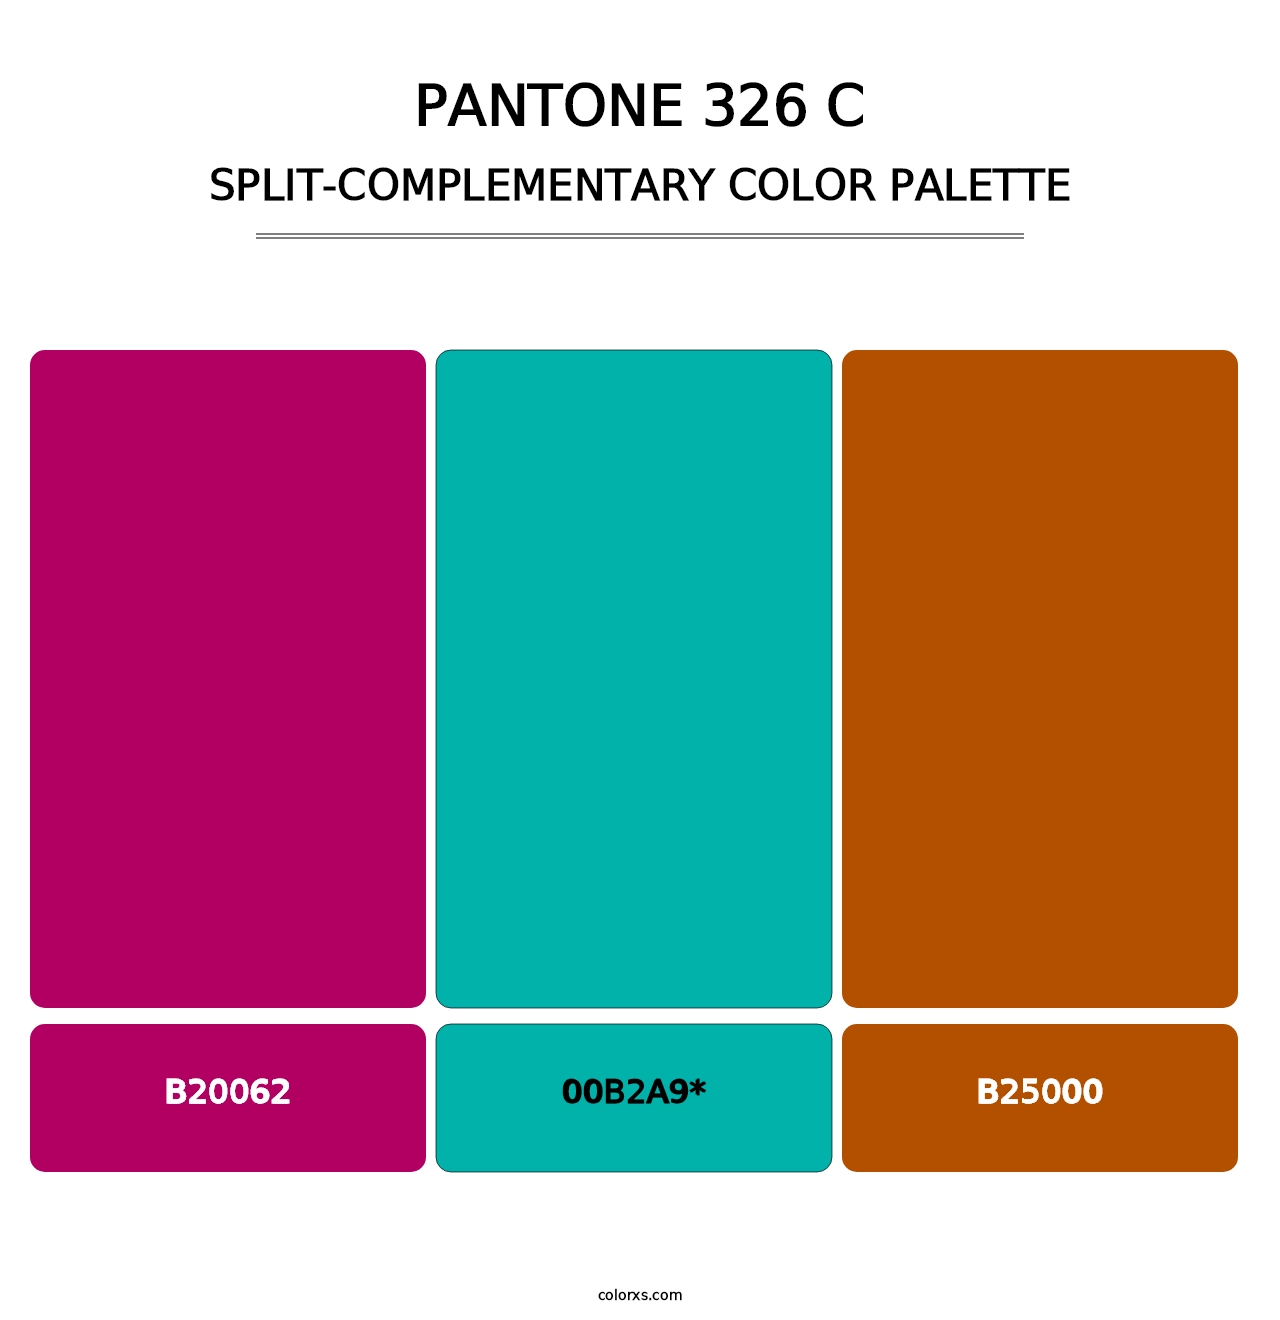 PANTONE 326 C - Split-Complementary Color Palette